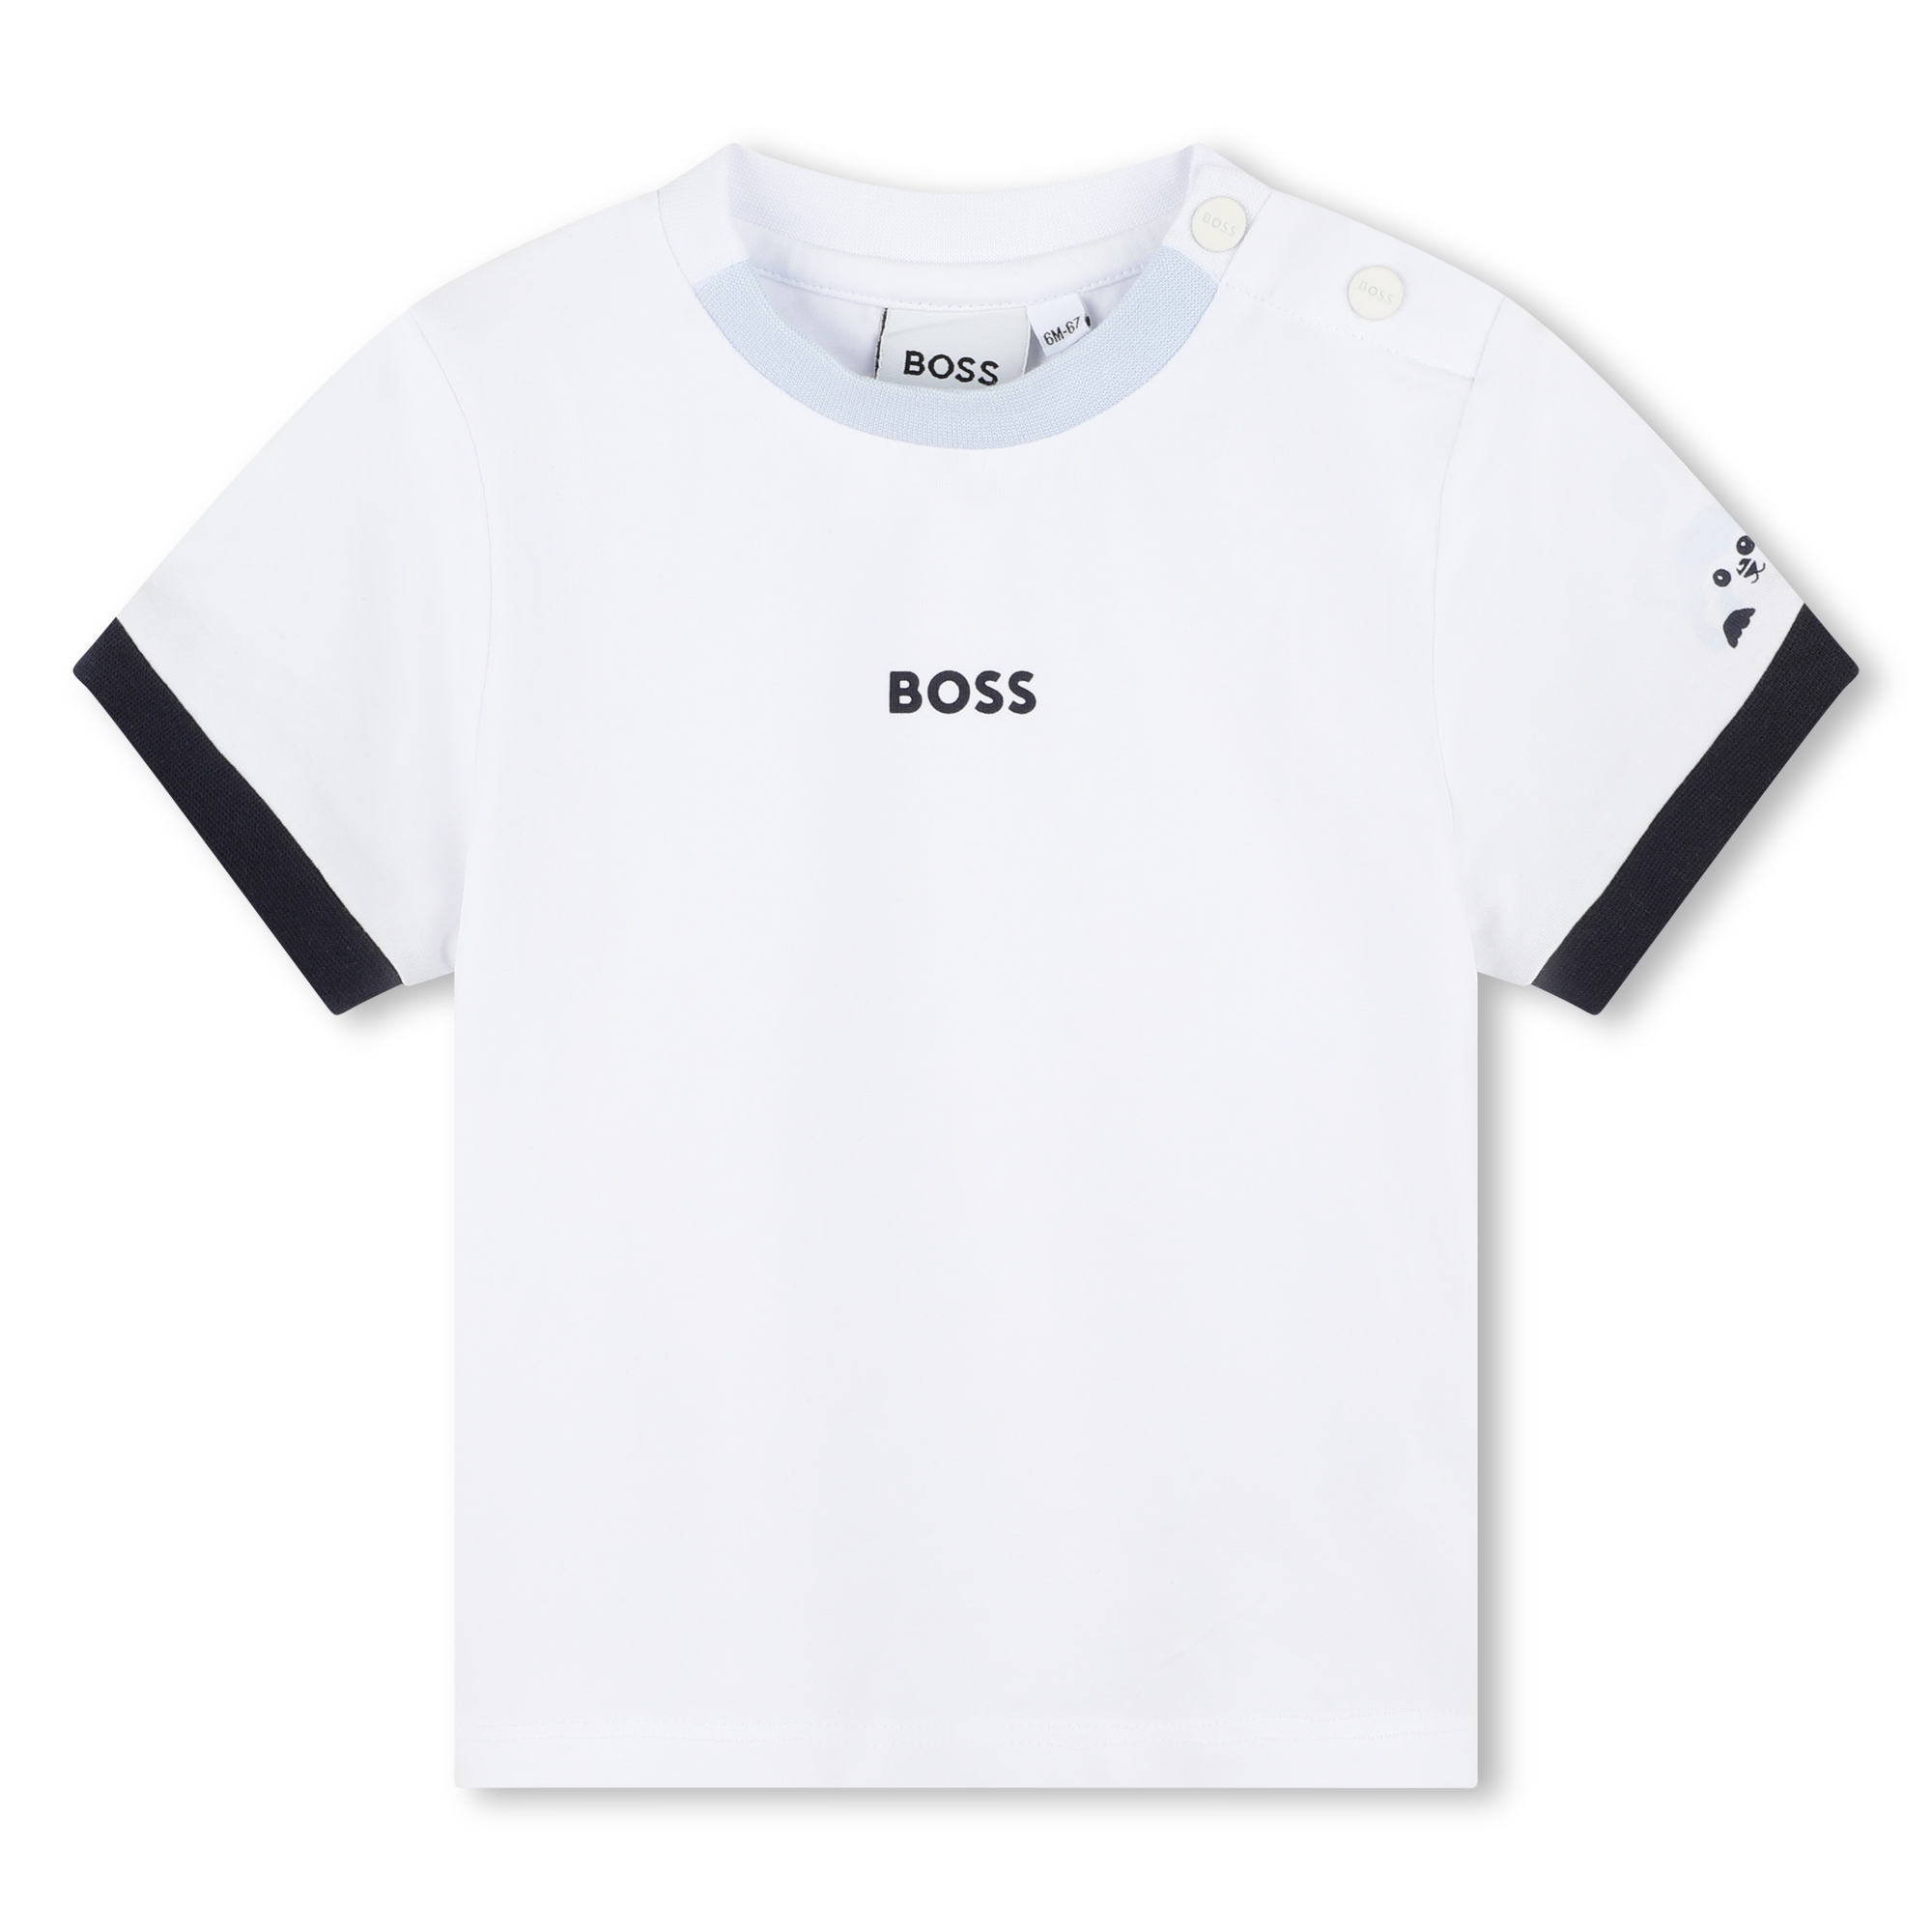 Completo combinaison + t-shirt BOSS Per RAGAZZO